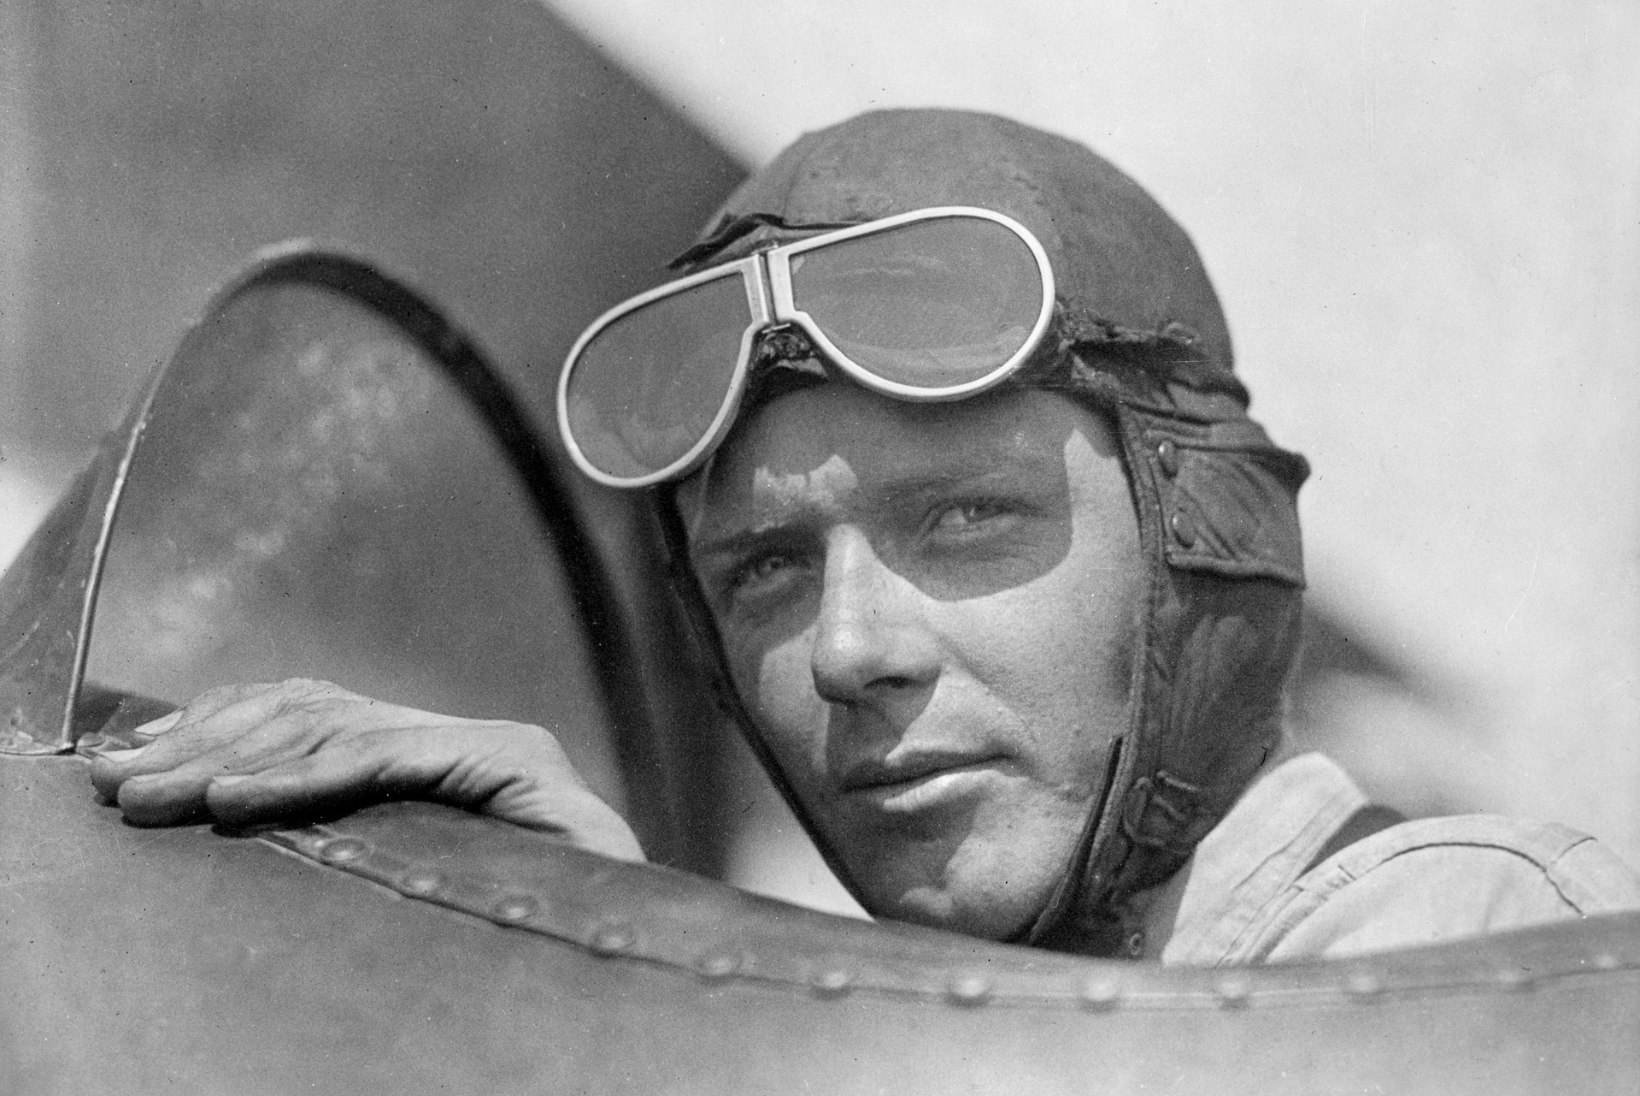 JÕLETU HÄLLIRÖÖV: lennundussangar Lindberghi süüdistati omaenda lapse tapmises